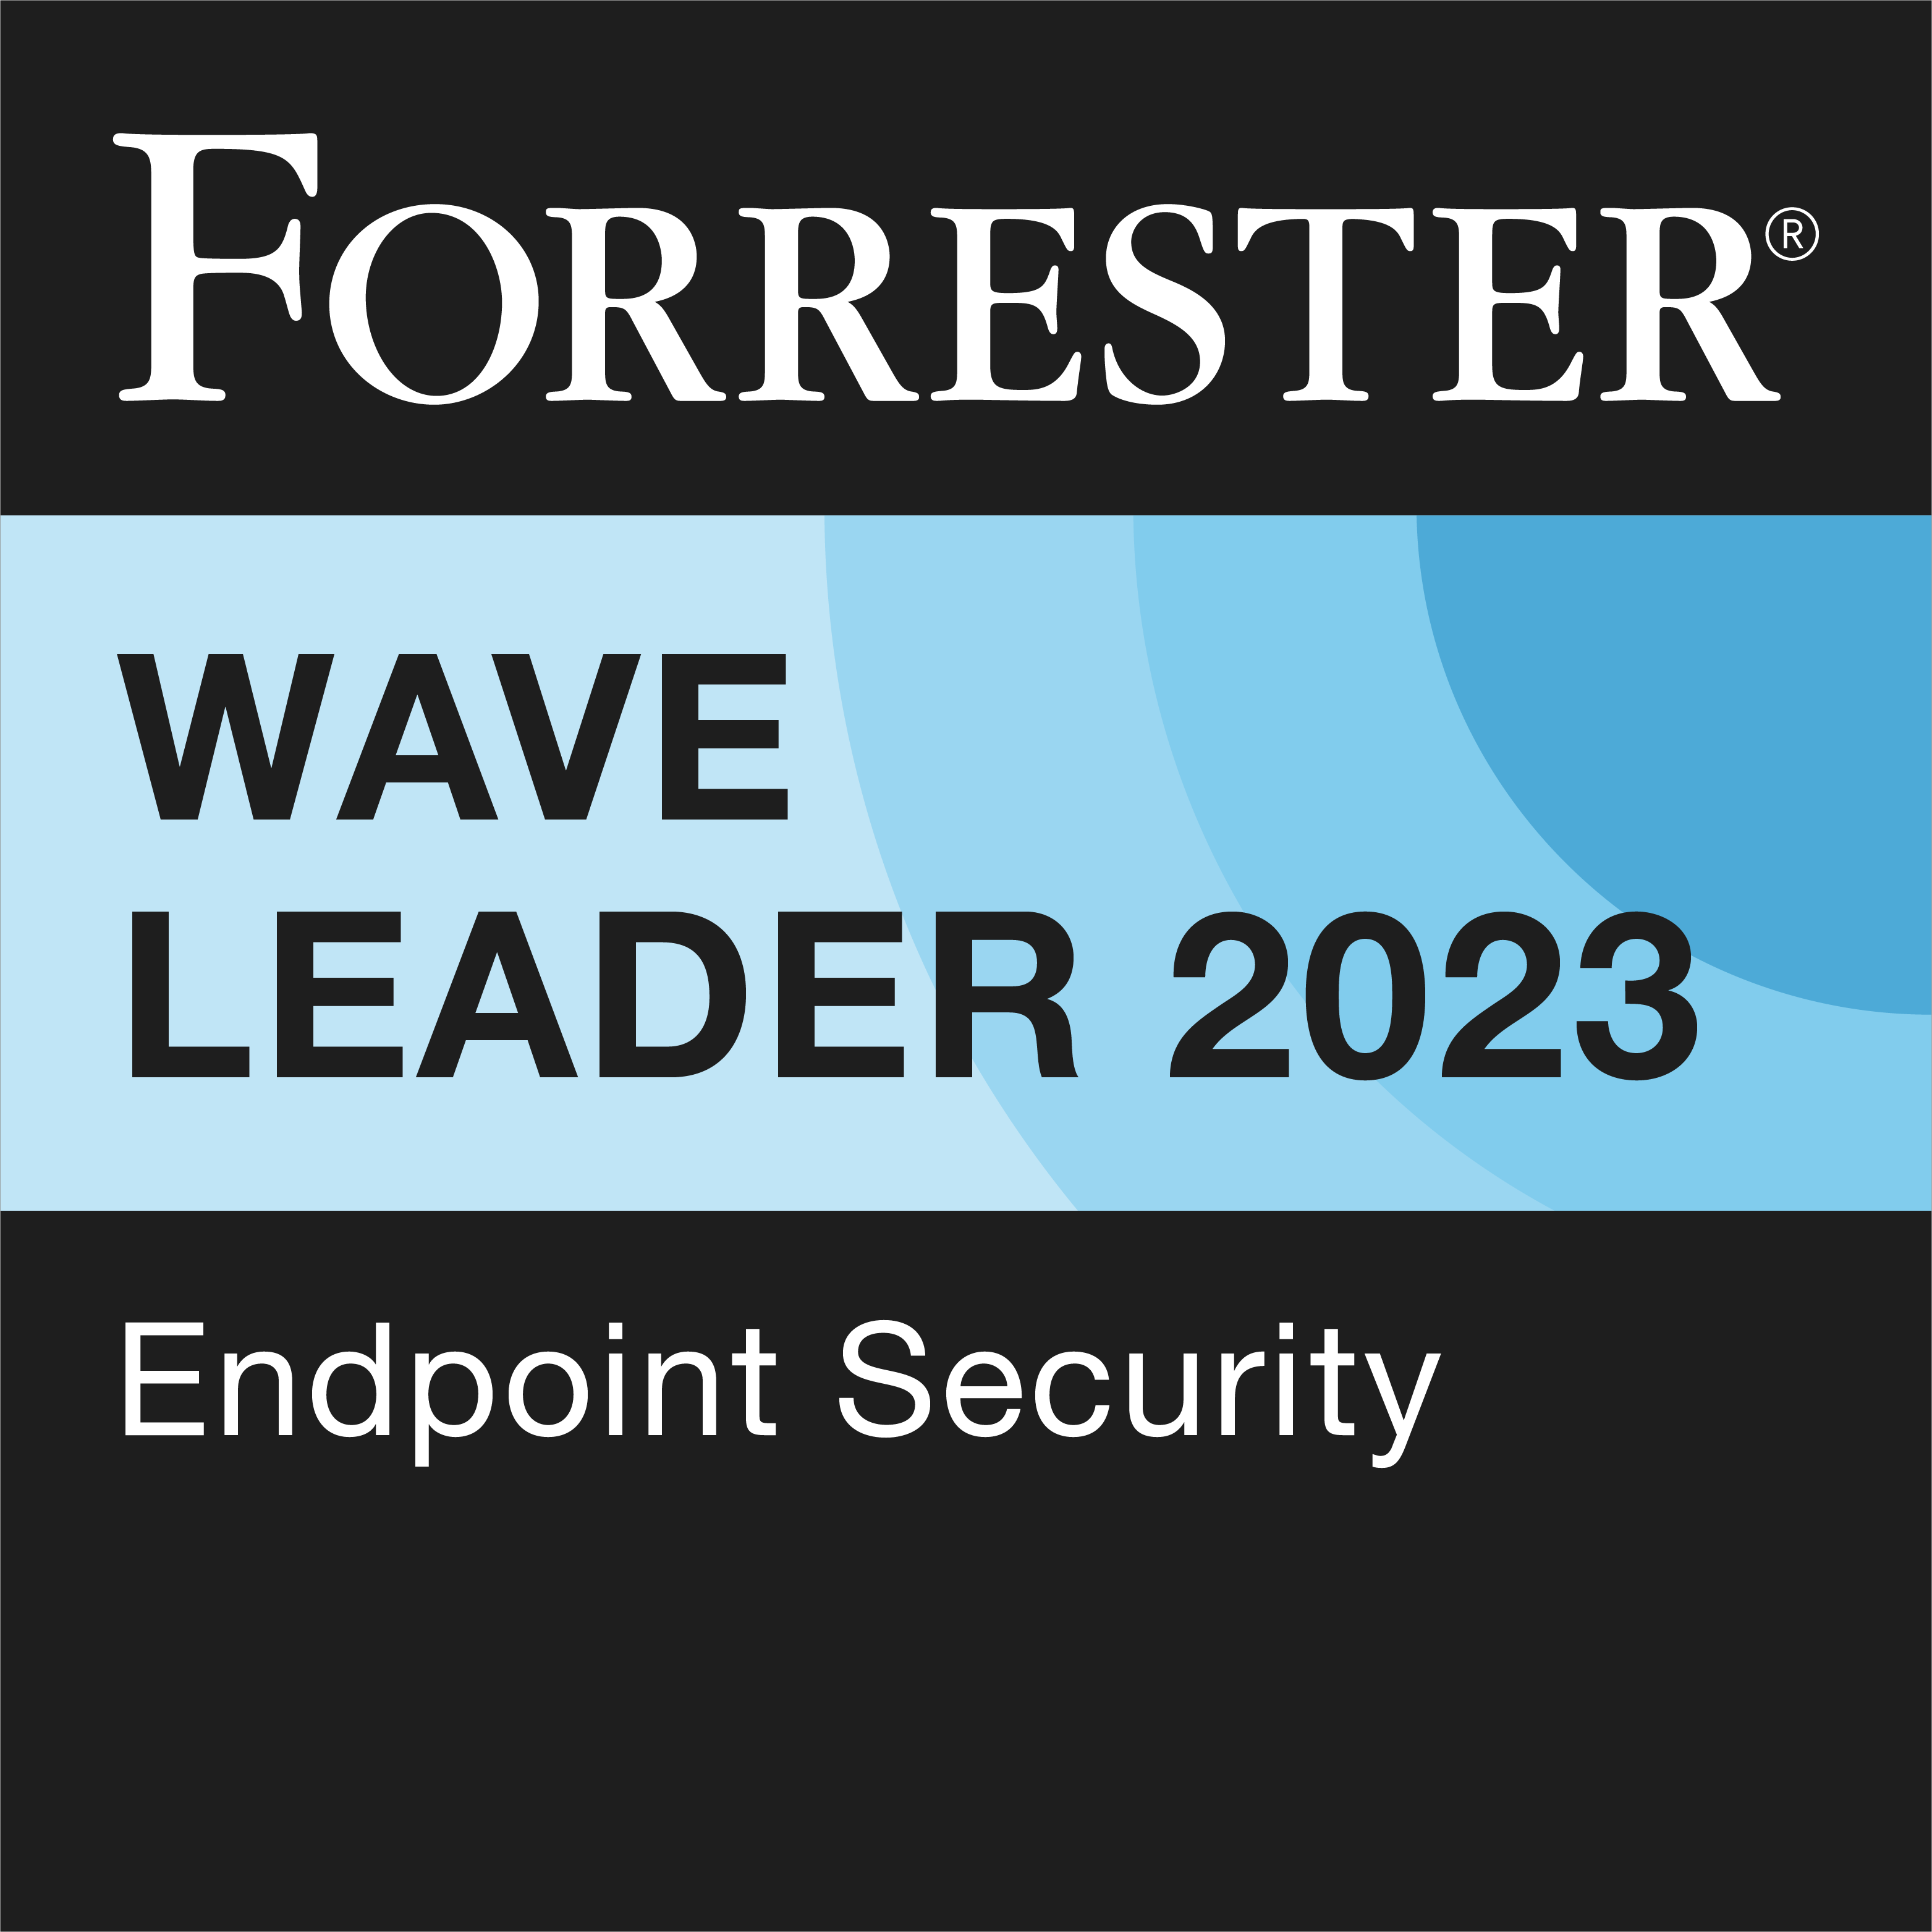 Bitdefender named a Leader in The Forrester Wave™: Endpoint Security, Q4 2023